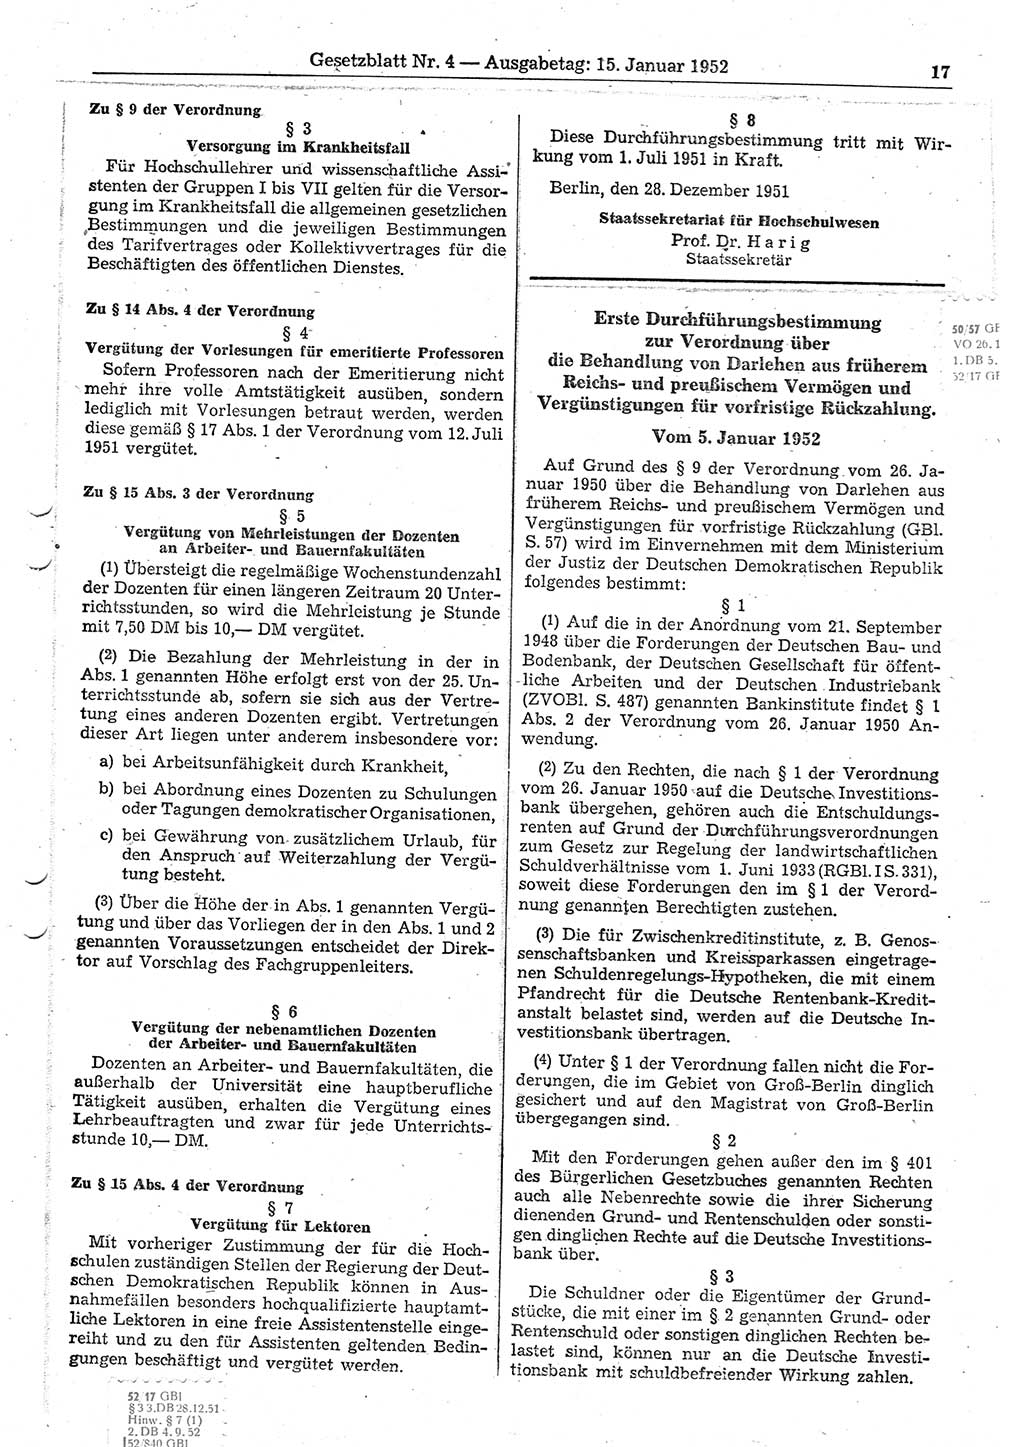 Gesetzblatt (GBl.) der Deutschen Demokratischen Republik (DDR) 1952, Seite 17 (GBl. DDR 1952, S. 17)